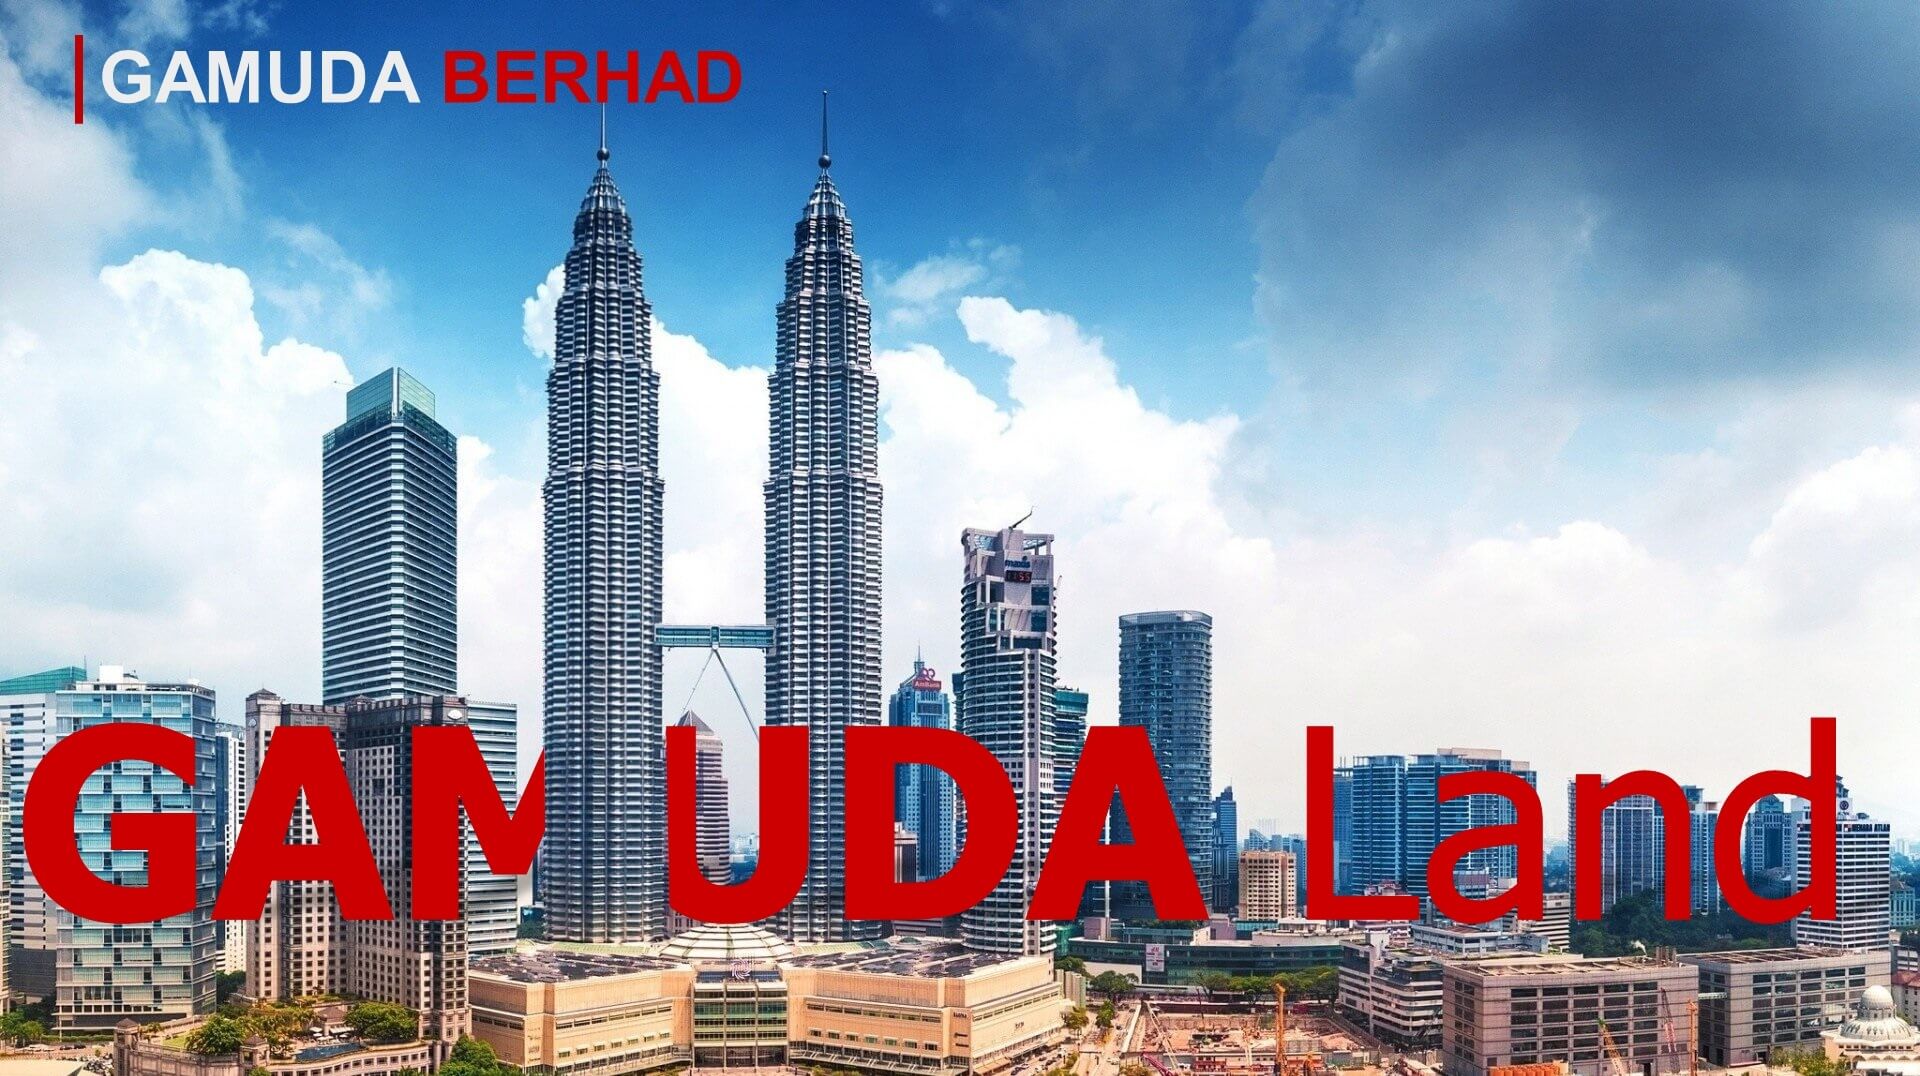 Được thành lập từ năm 1995, Gamuda Land là đơn vị phát triển bất động sản của Gamuda Berhad, một tập đoàn hàng đầu trong lĩnh vực xây dựng và phát triển cơ sở hạ tầng tại Malaysia.